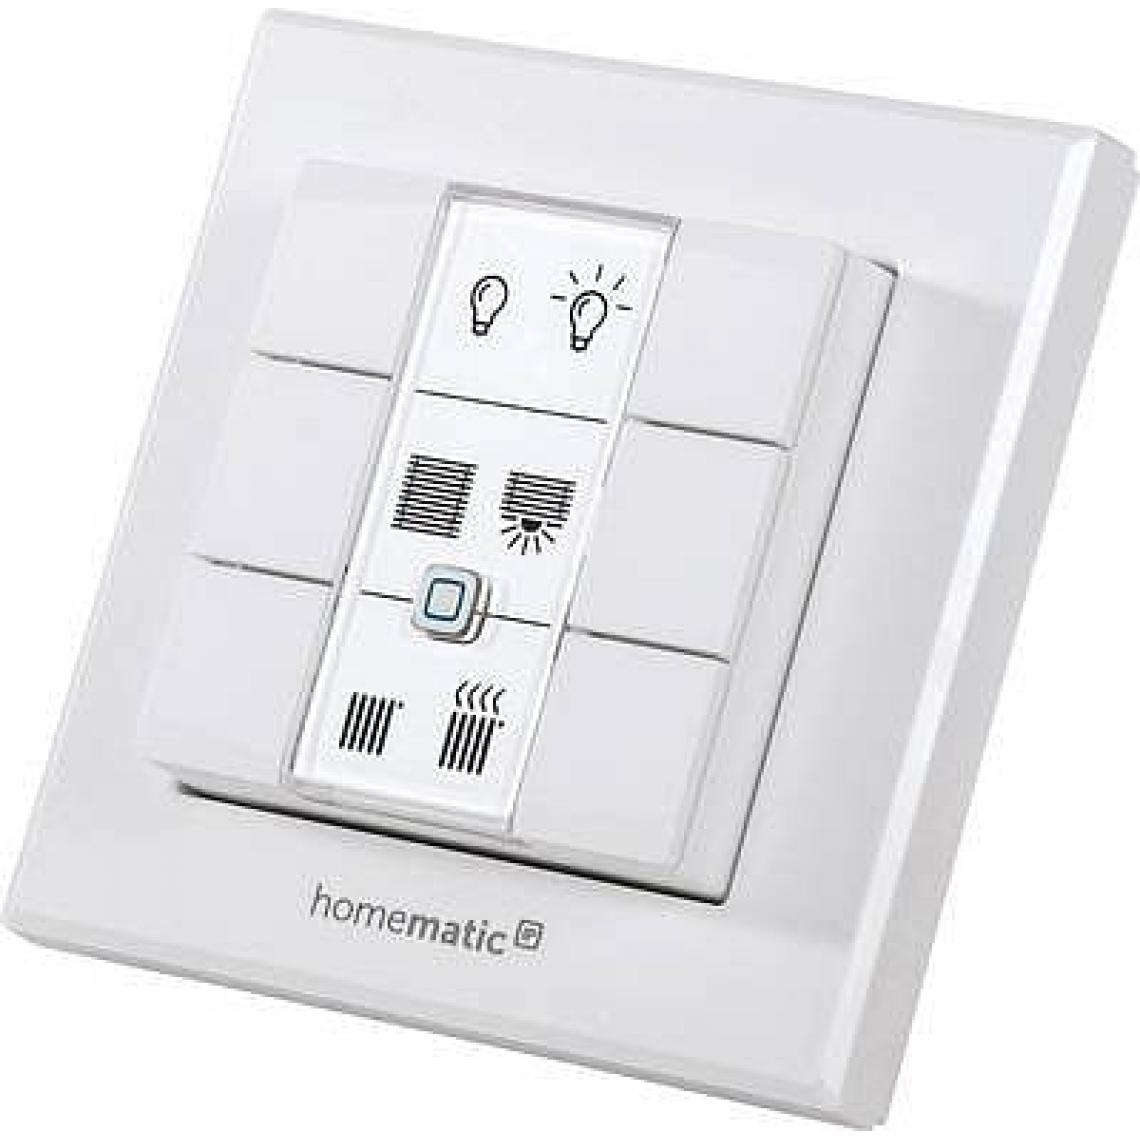 Homematic Ip - Télécommande murale sans fil type interrupteur avec 6 boutons - Homematic Ip - Détecteur connecté